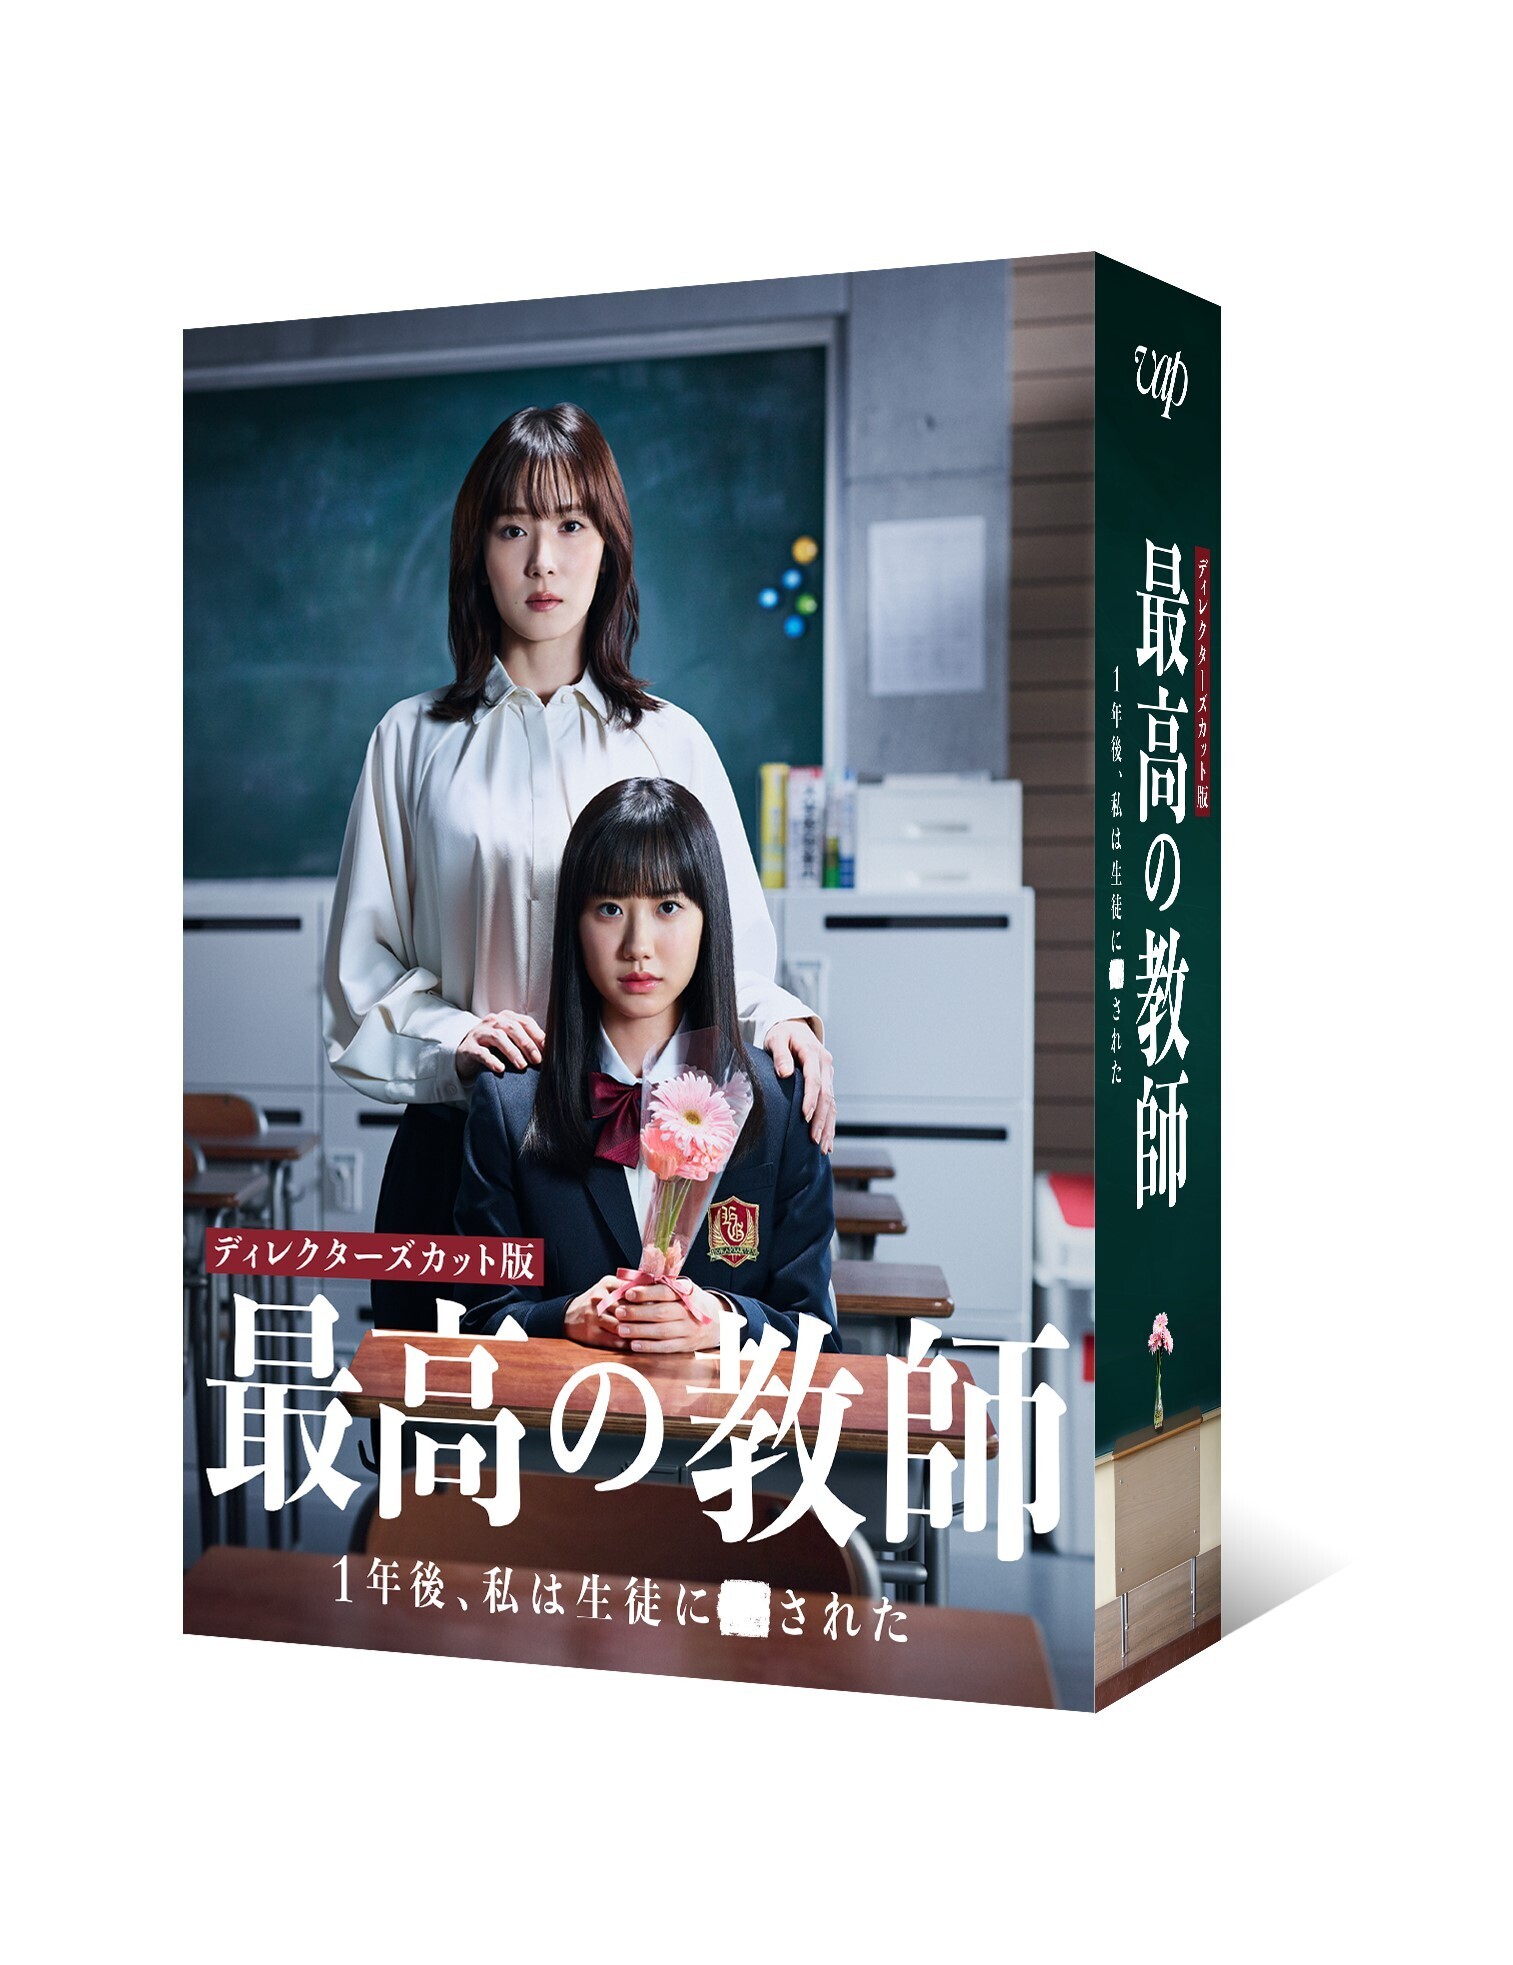 ドラマ「最高の教師 1年後、私は生徒に□された」DVD-BOX | 菅田将暉